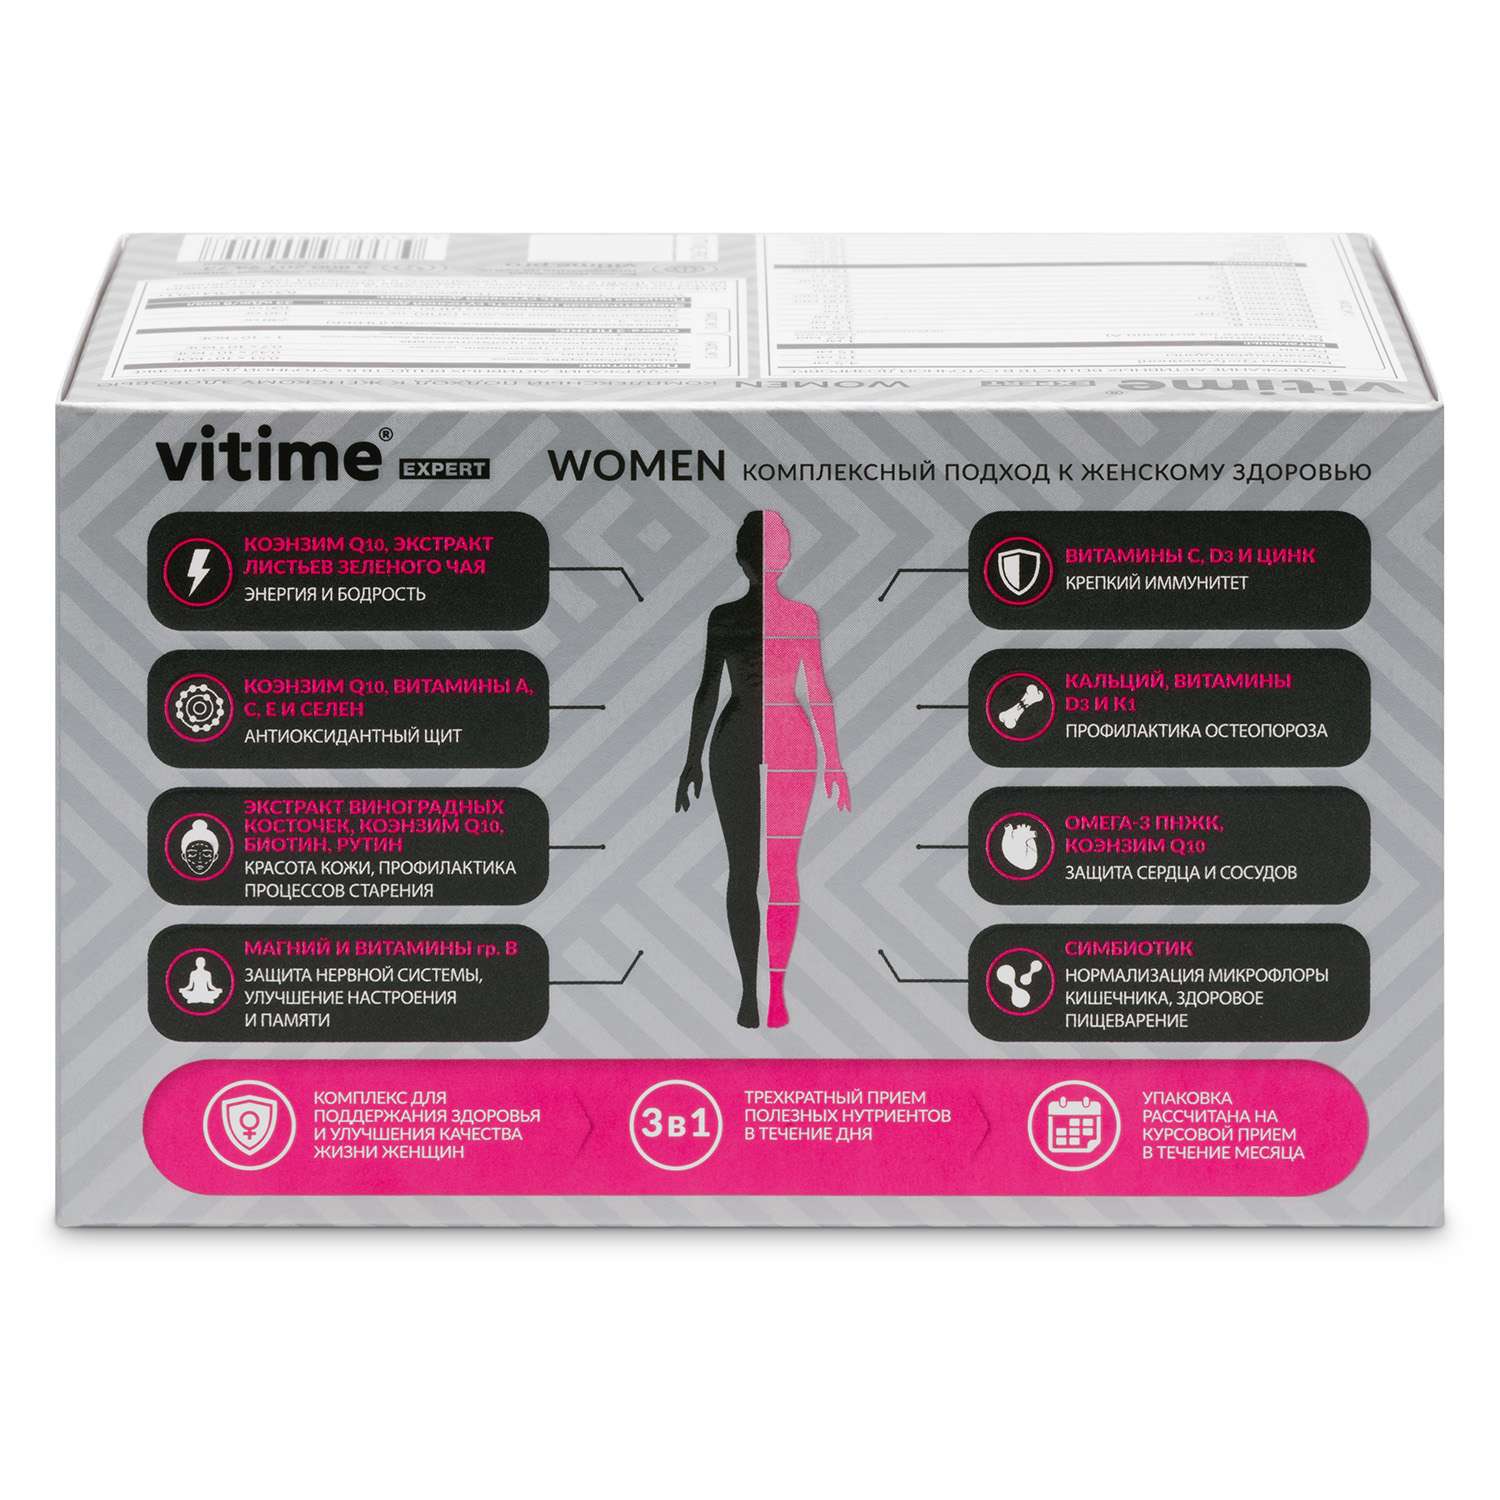 Витаминно-минеральный комплекс Vitime Expert Women для женщин 96 капсул - фото 2